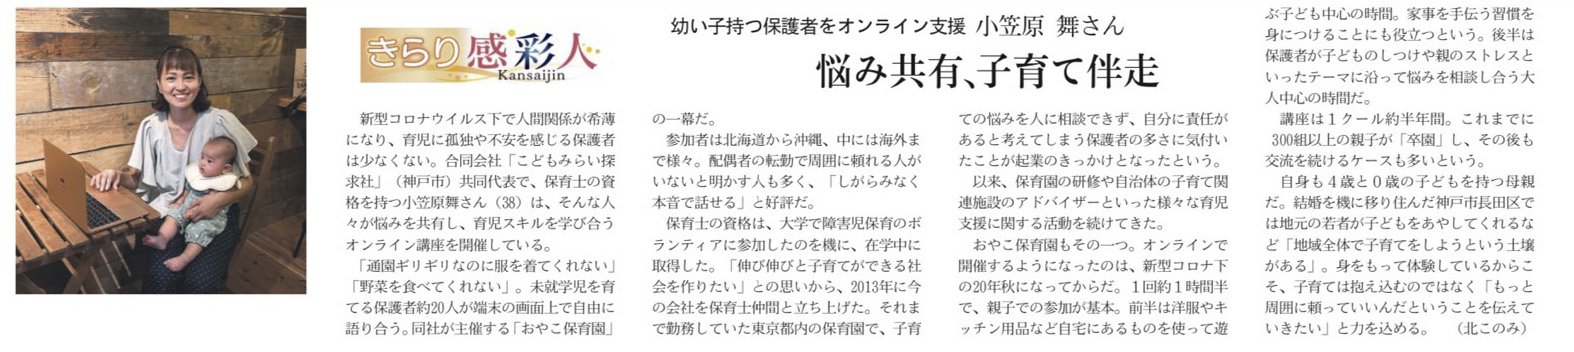 小笠原のインタビュー記事が日経新聞関西版に掲載されました。